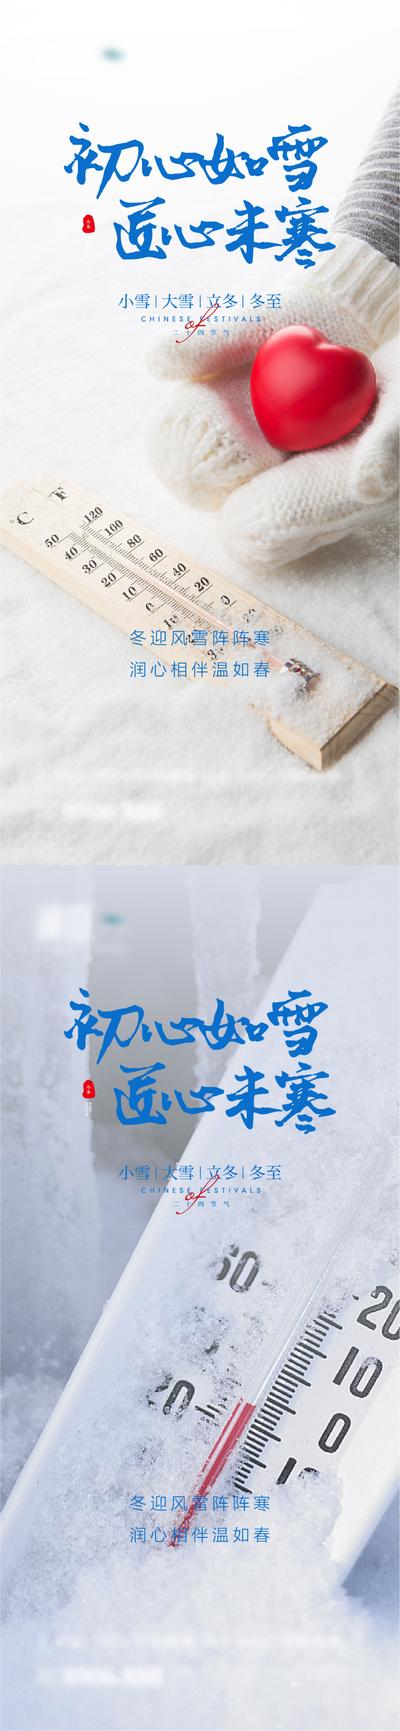 南门网 海报 二十四节气 小雪 大雪 立冬 冬至 简约 雪景 系列